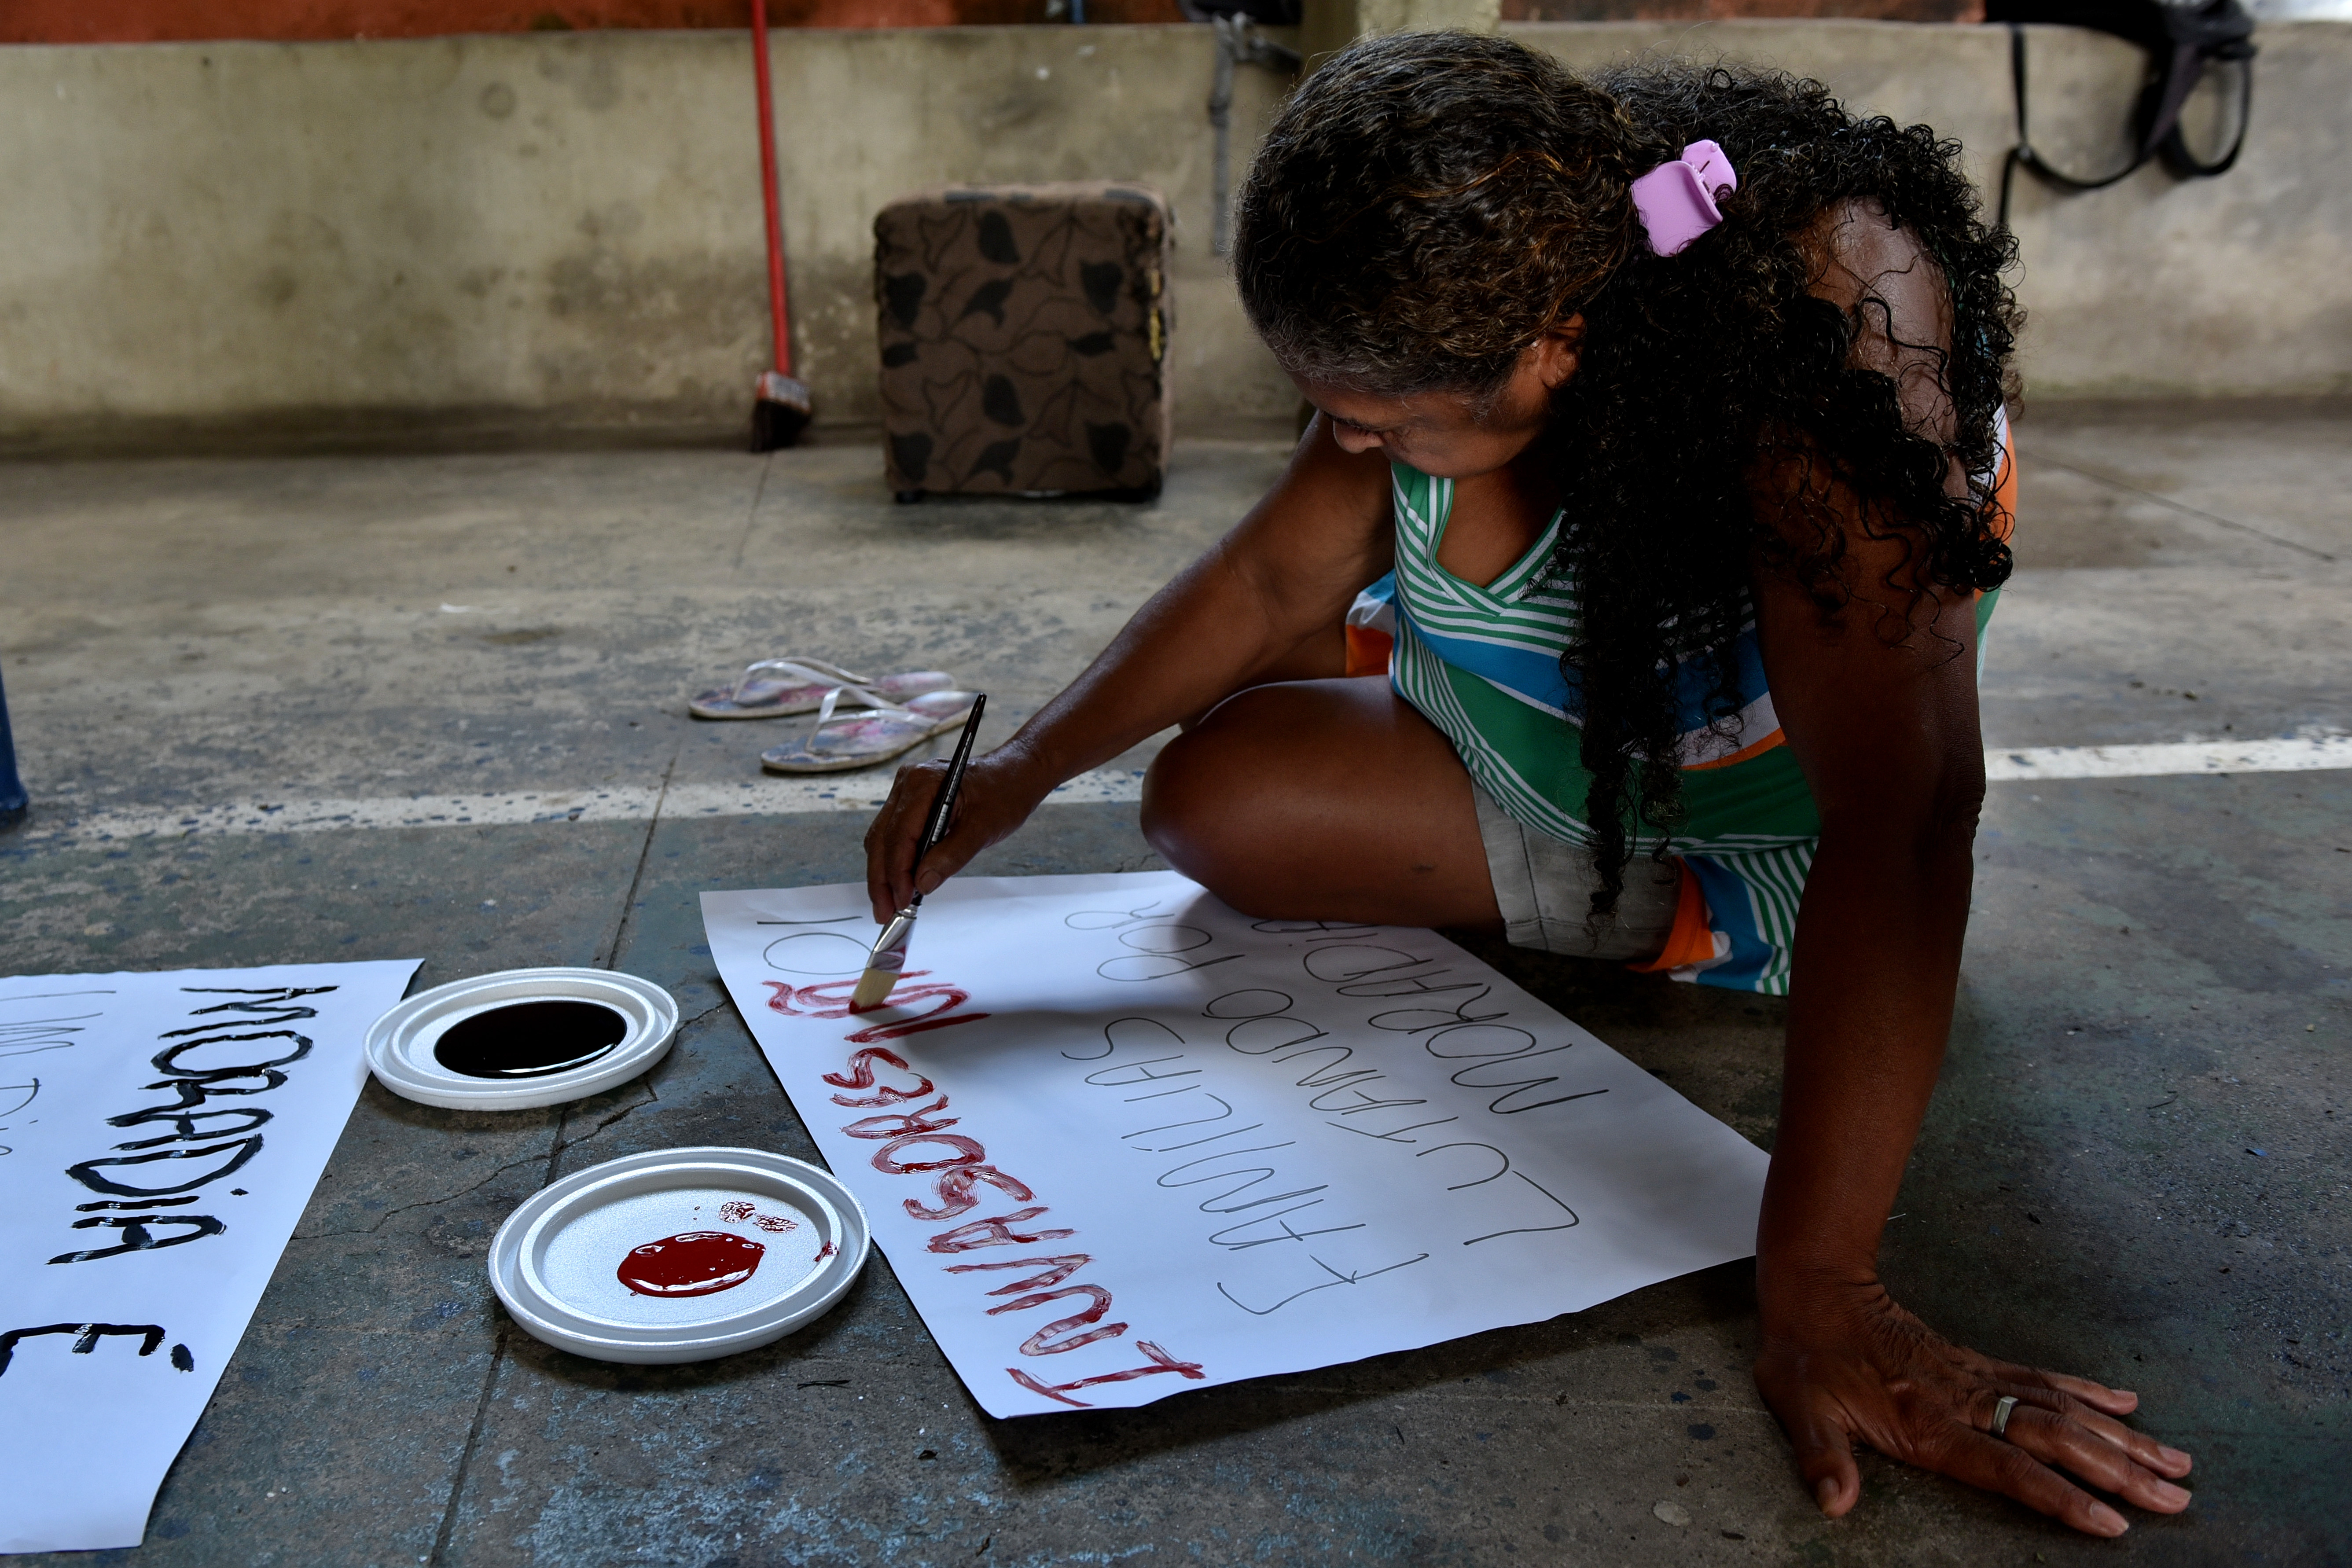  Moradores da Ocupação Chico Prego pintam cartazes para o ato que vai acontecer hj em frente na Câmara de vereadores de Vitória 